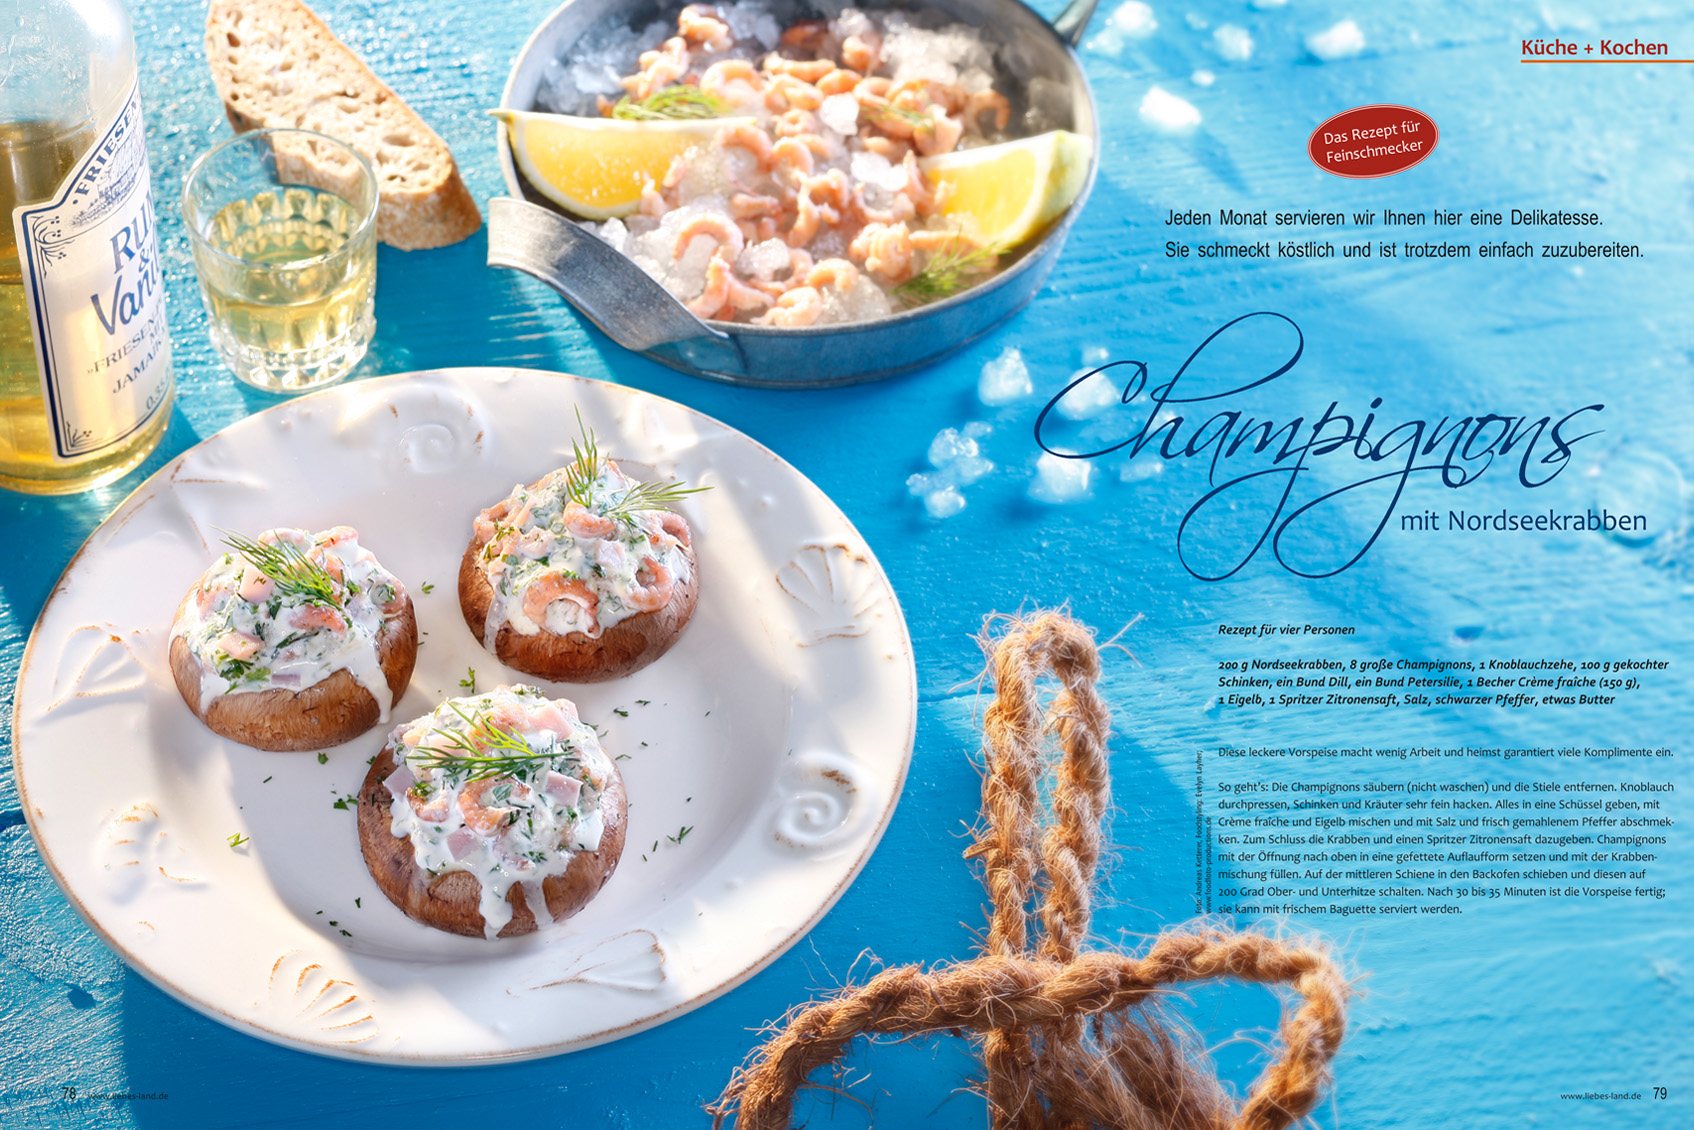 editorial - aufmacher - champignons mit krabben